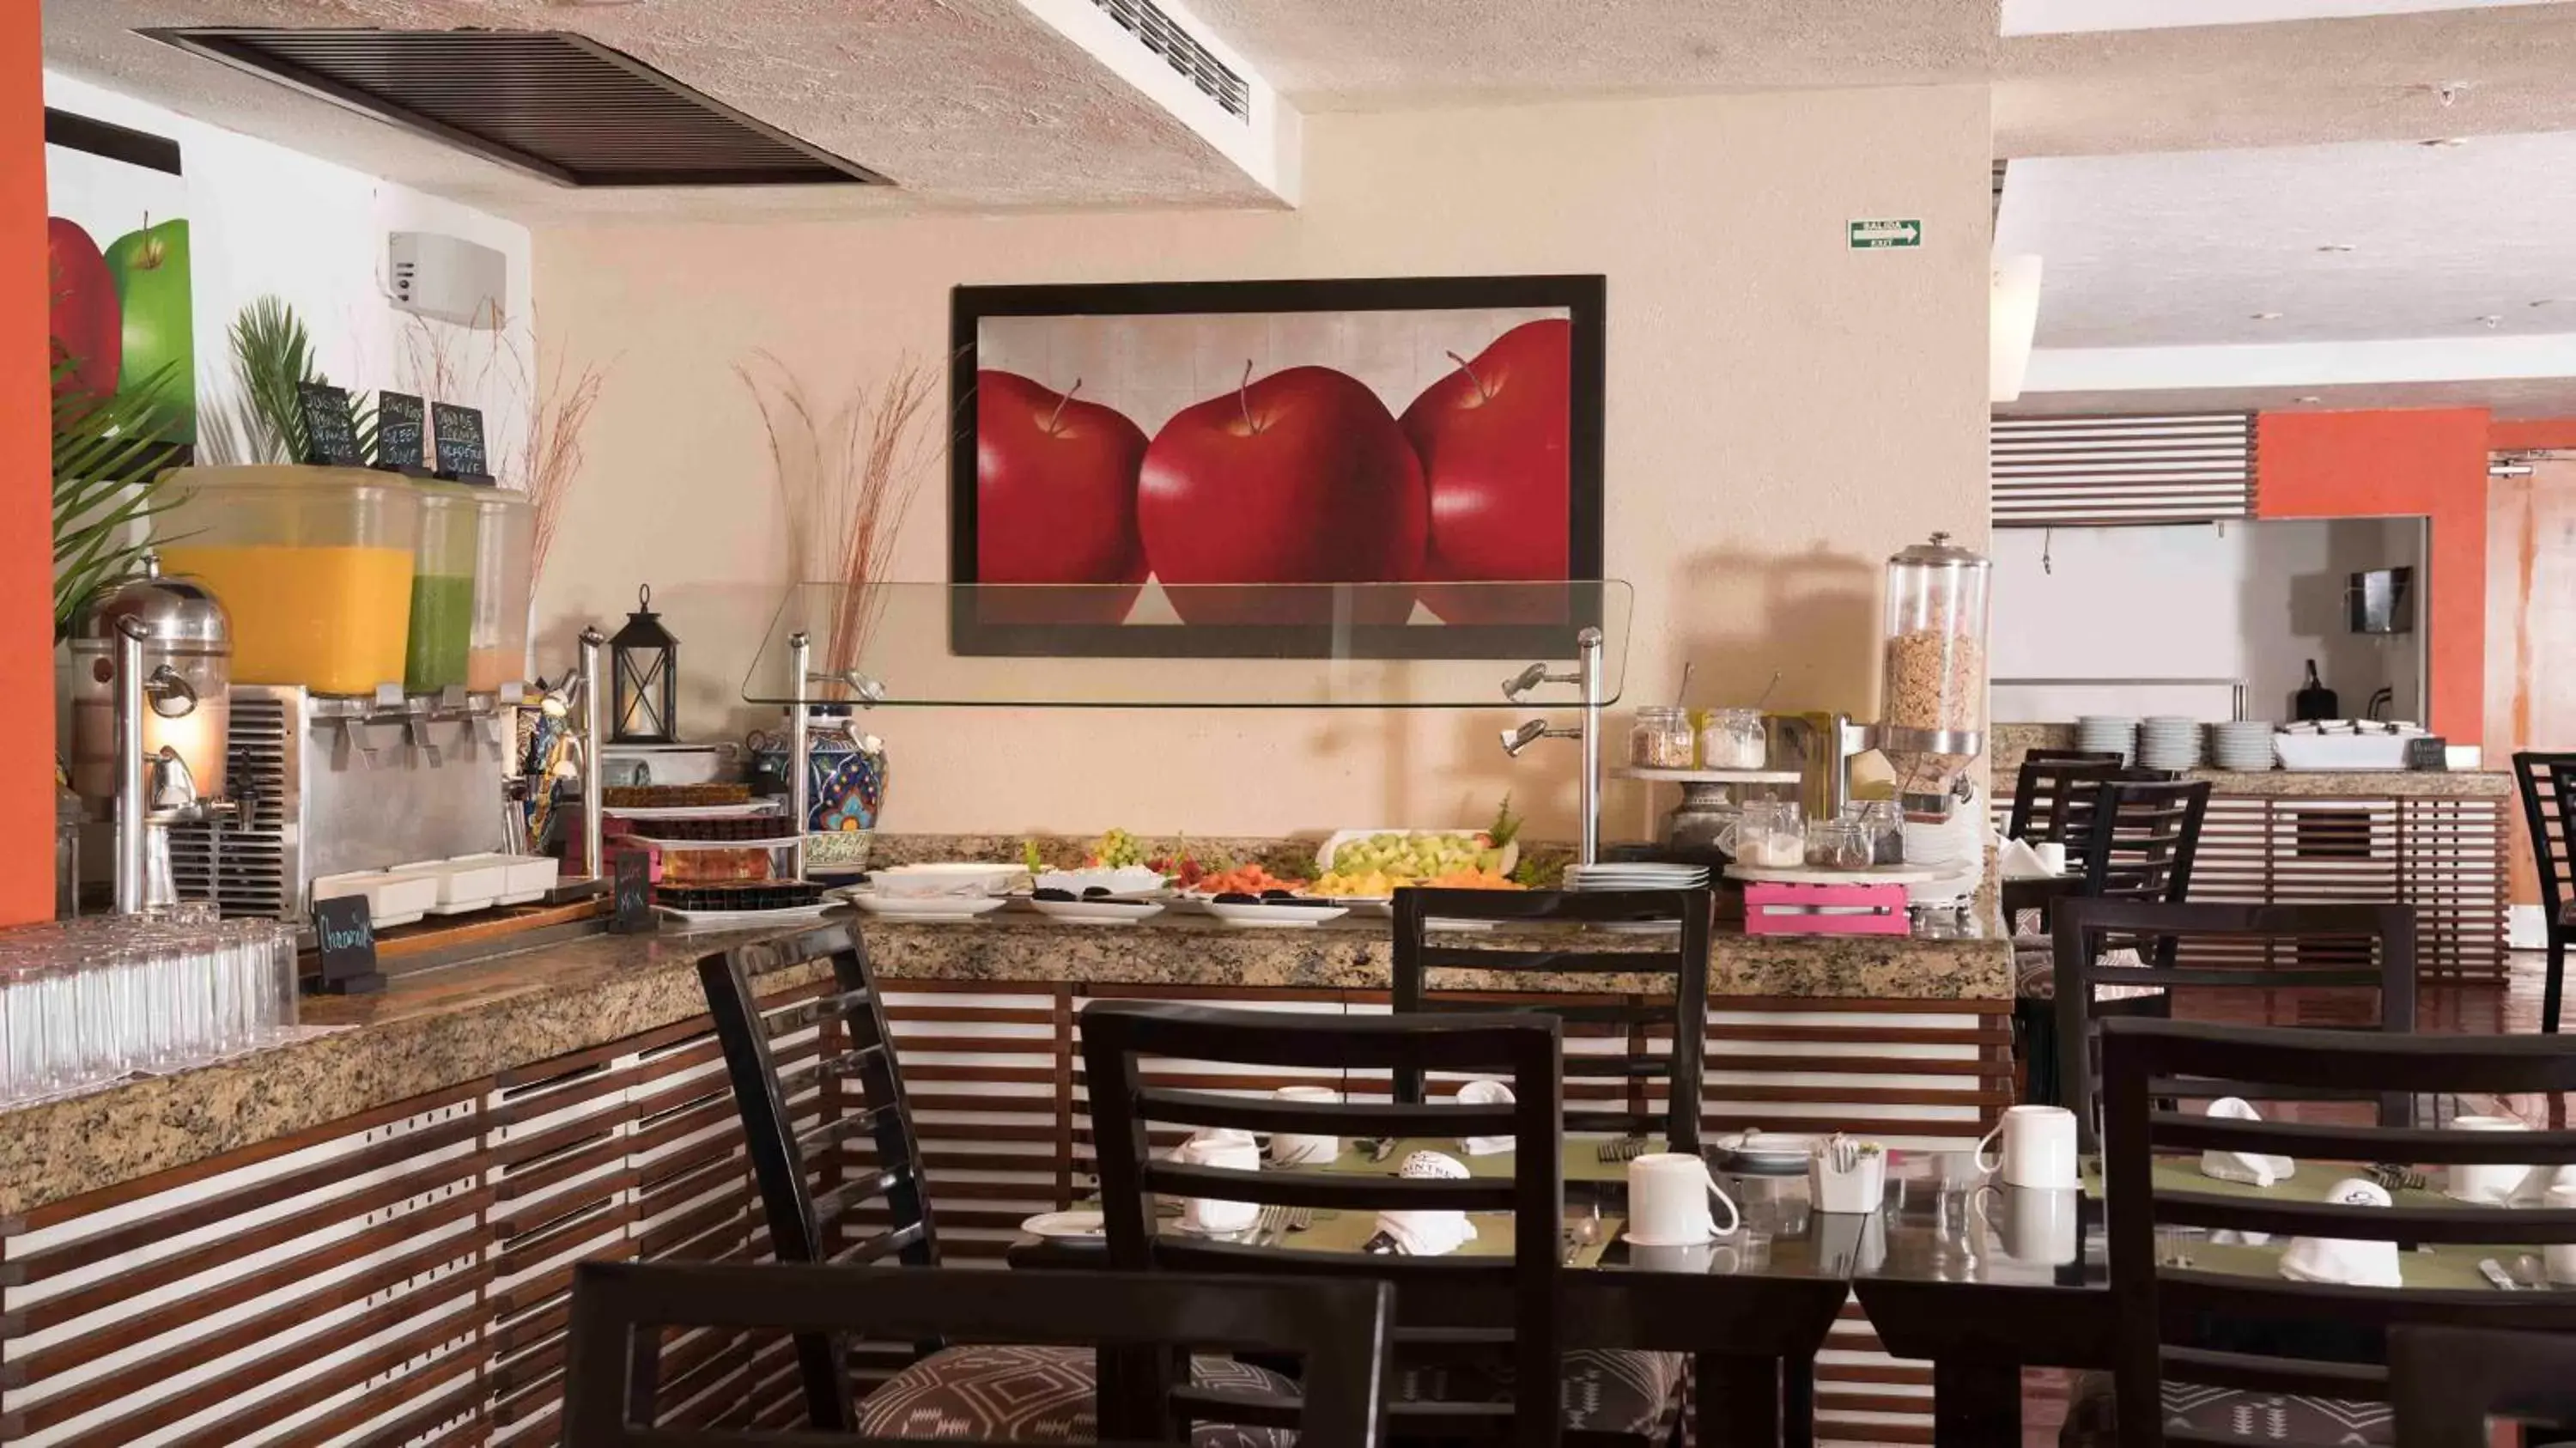 Restaurant/Places to Eat in Club Regina Puerto Vallarta